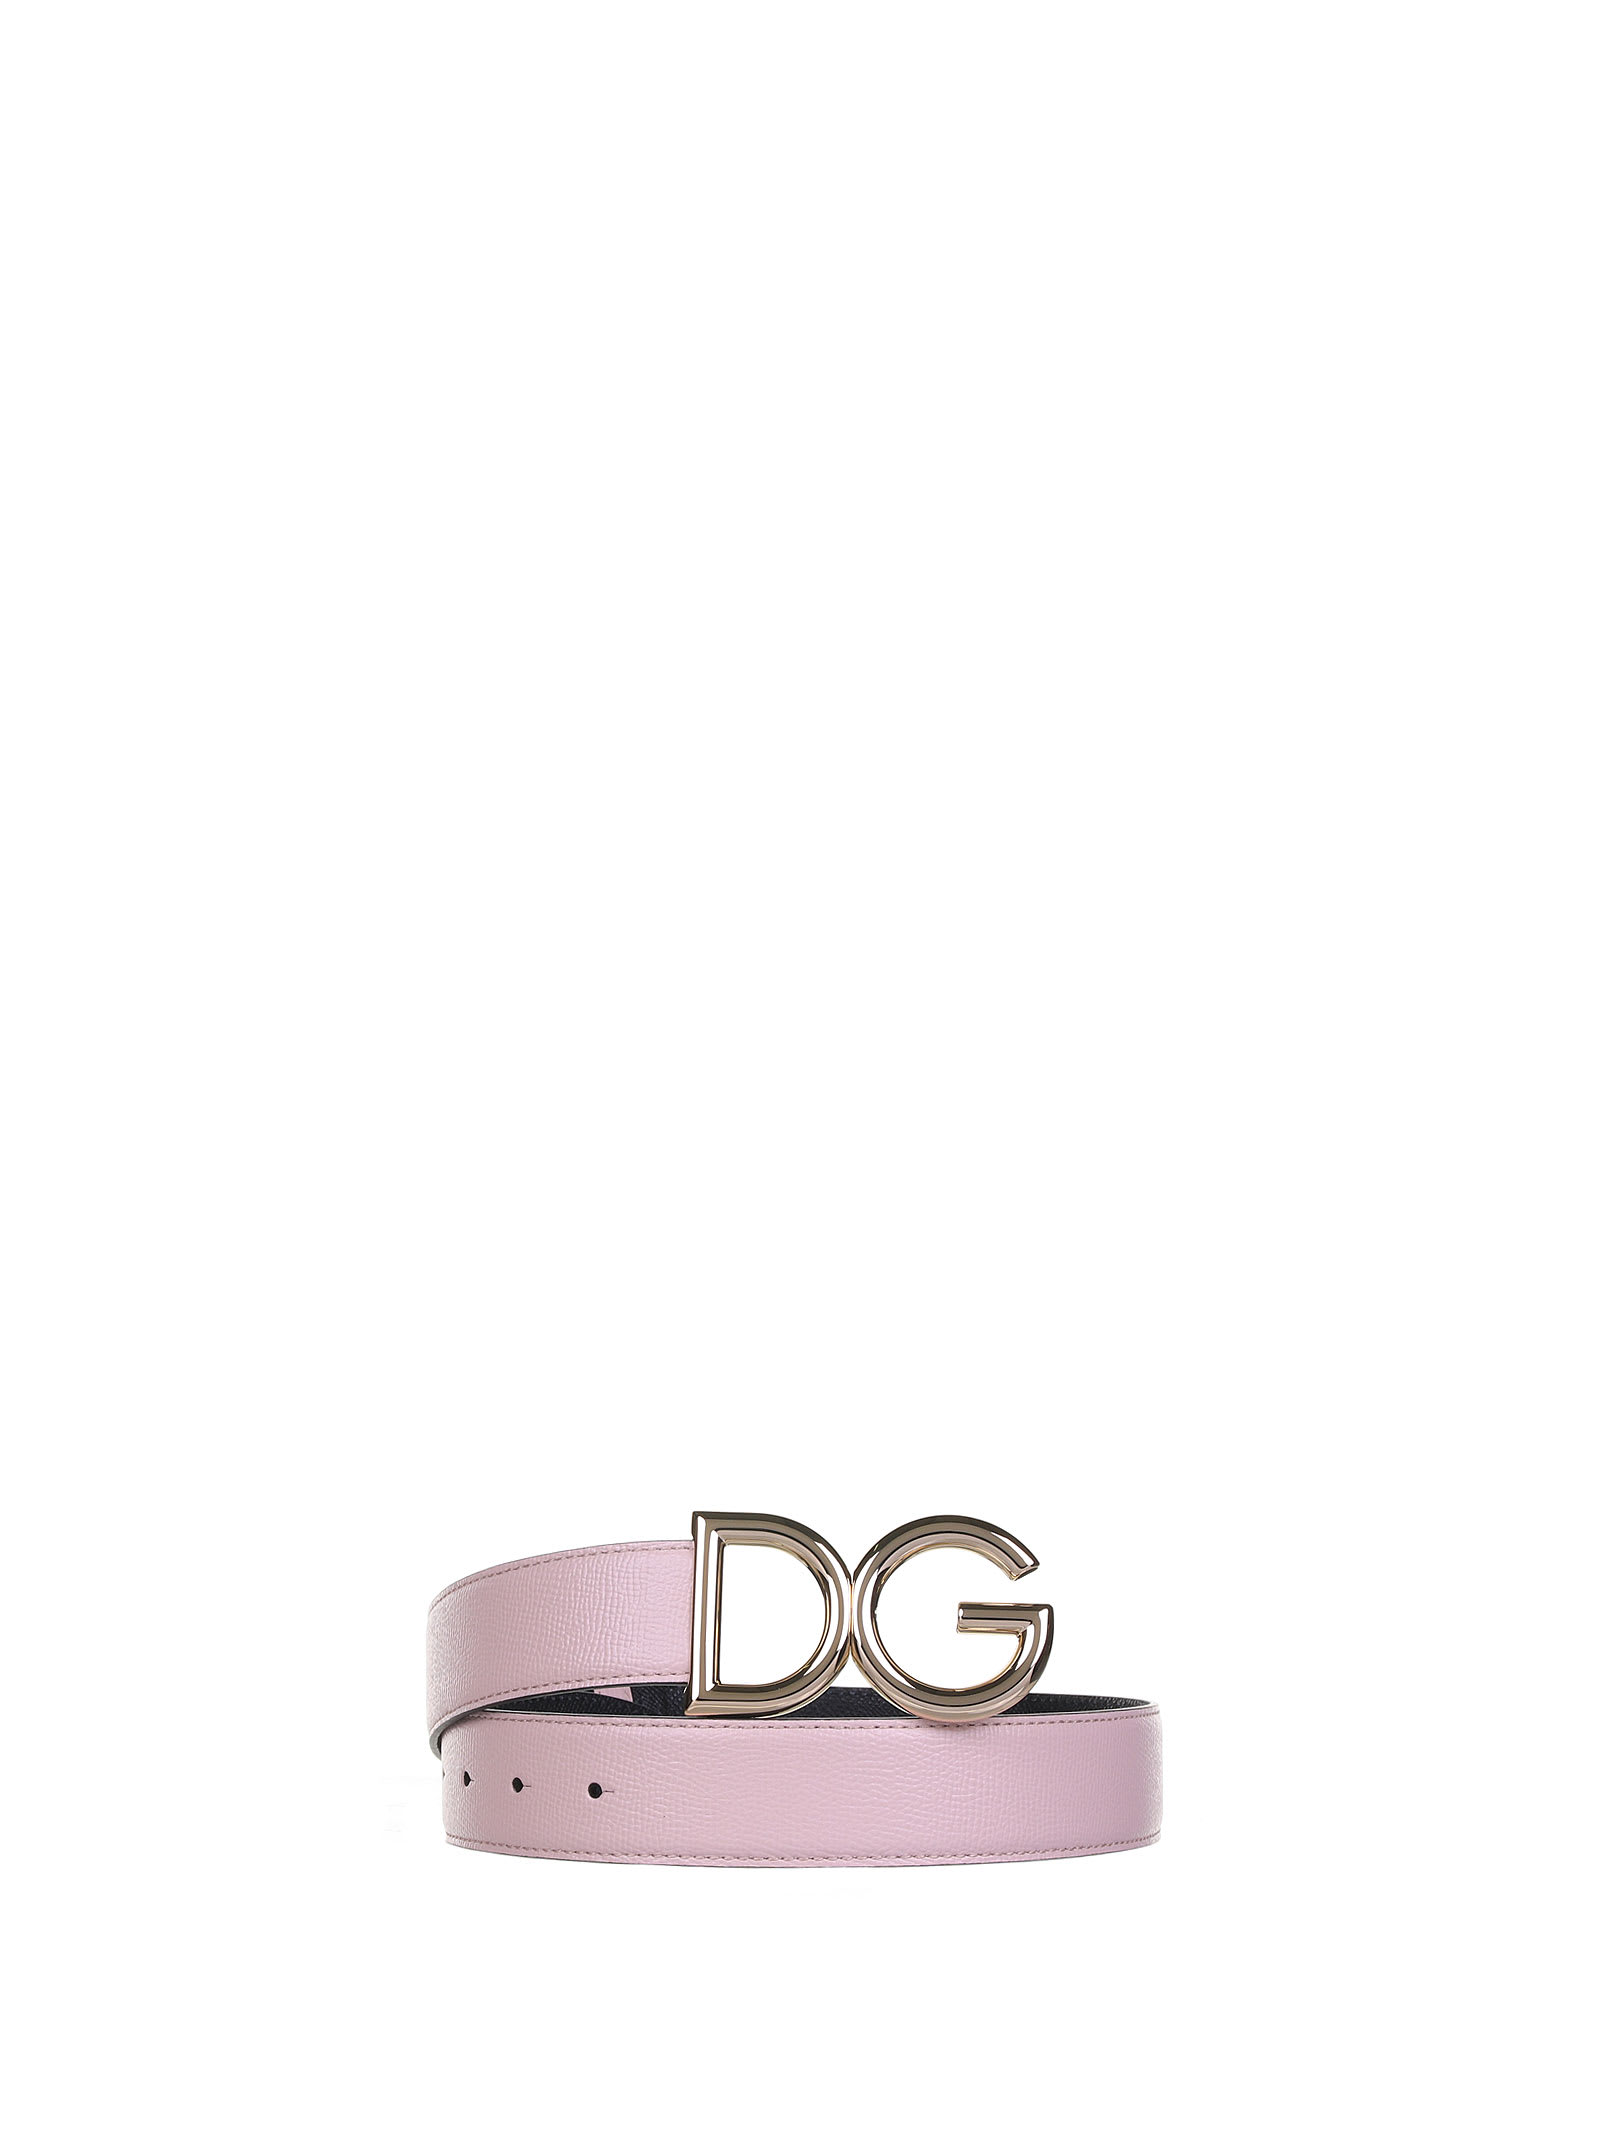 Dolce & Gabbana Dolce & Gabbana Reversible Belt